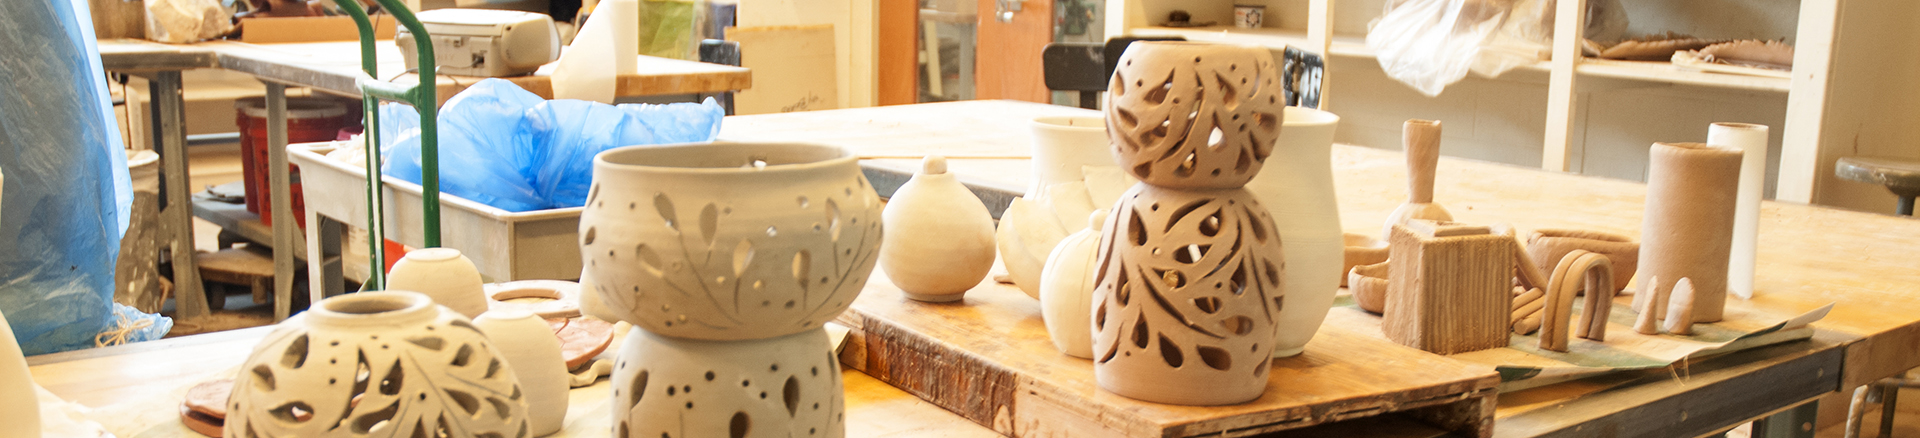 ceramic pieces in table in the ceramics studio